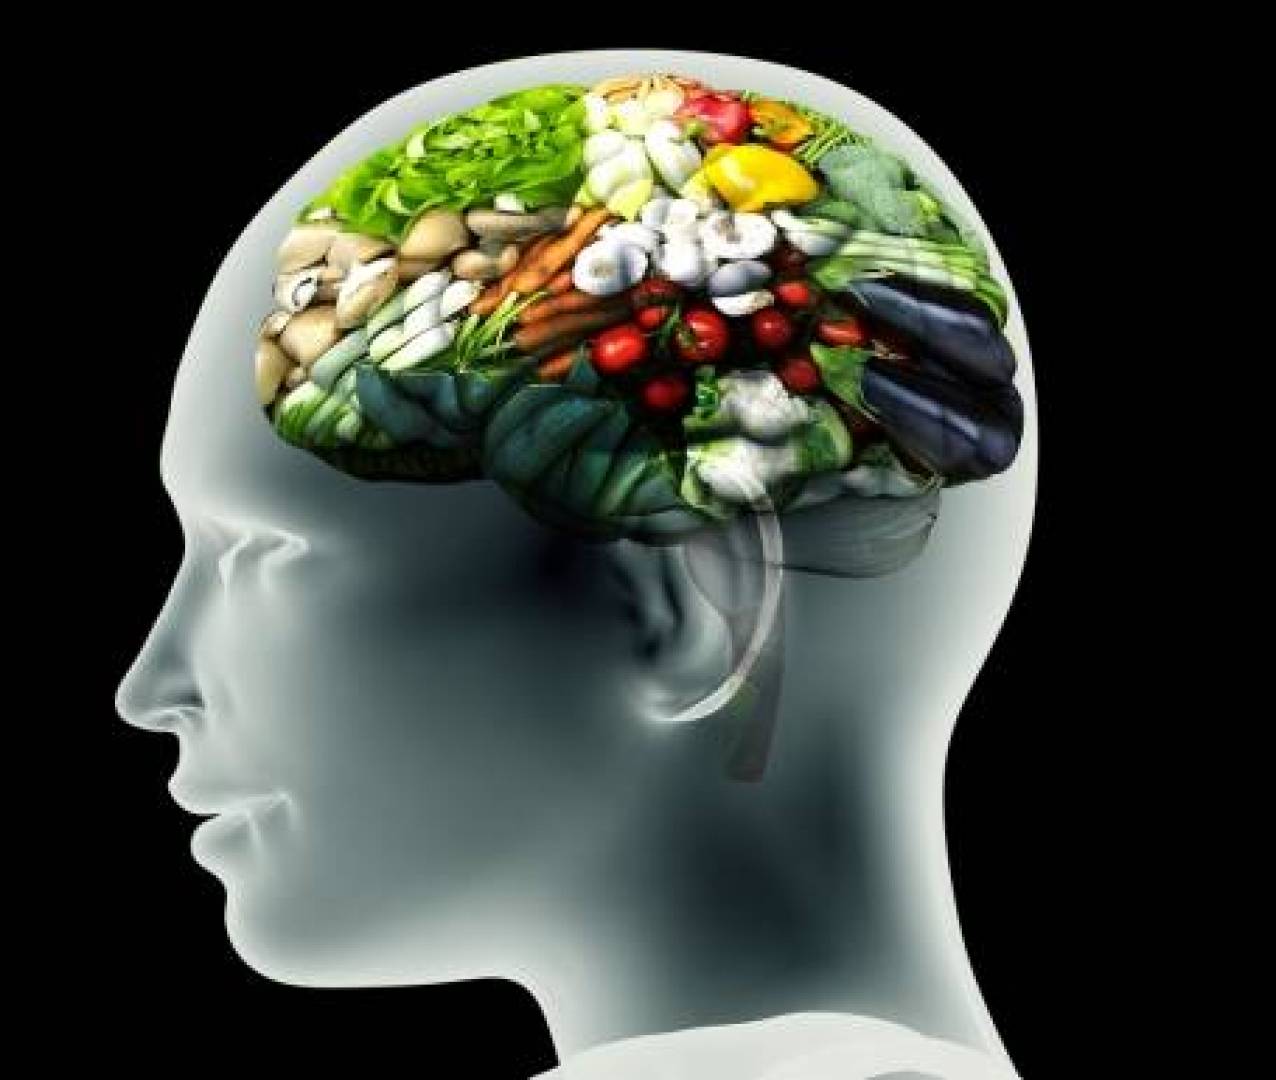 تأثير نوعية الغذاء على الصحة العقلية والنفسية